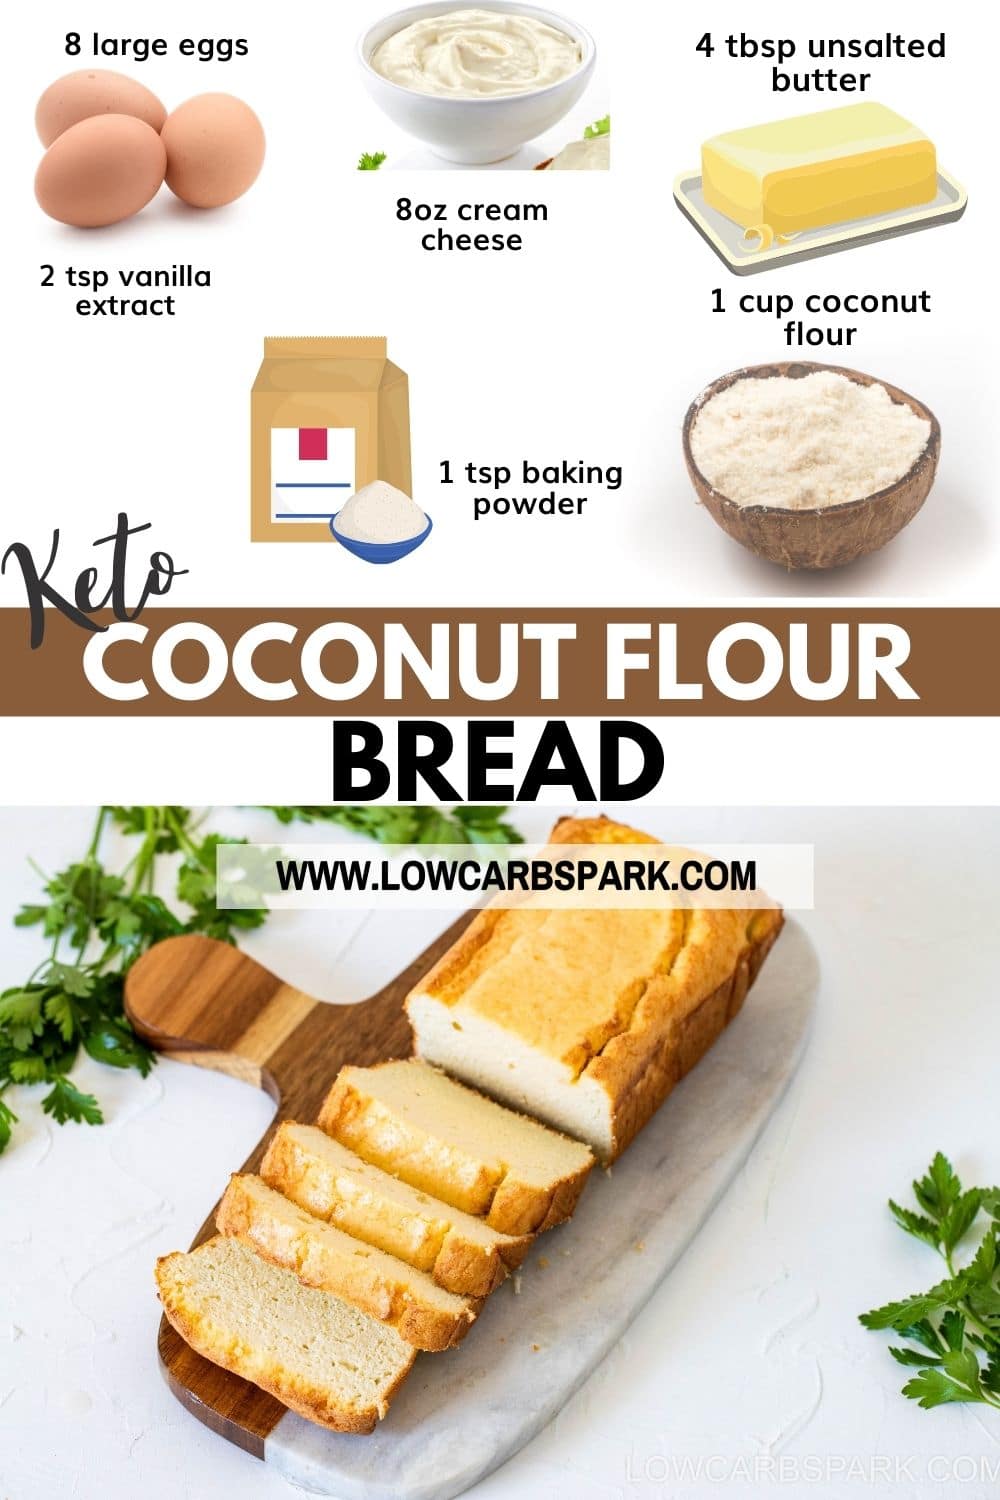 Easy Keto Coconut Flour Bread